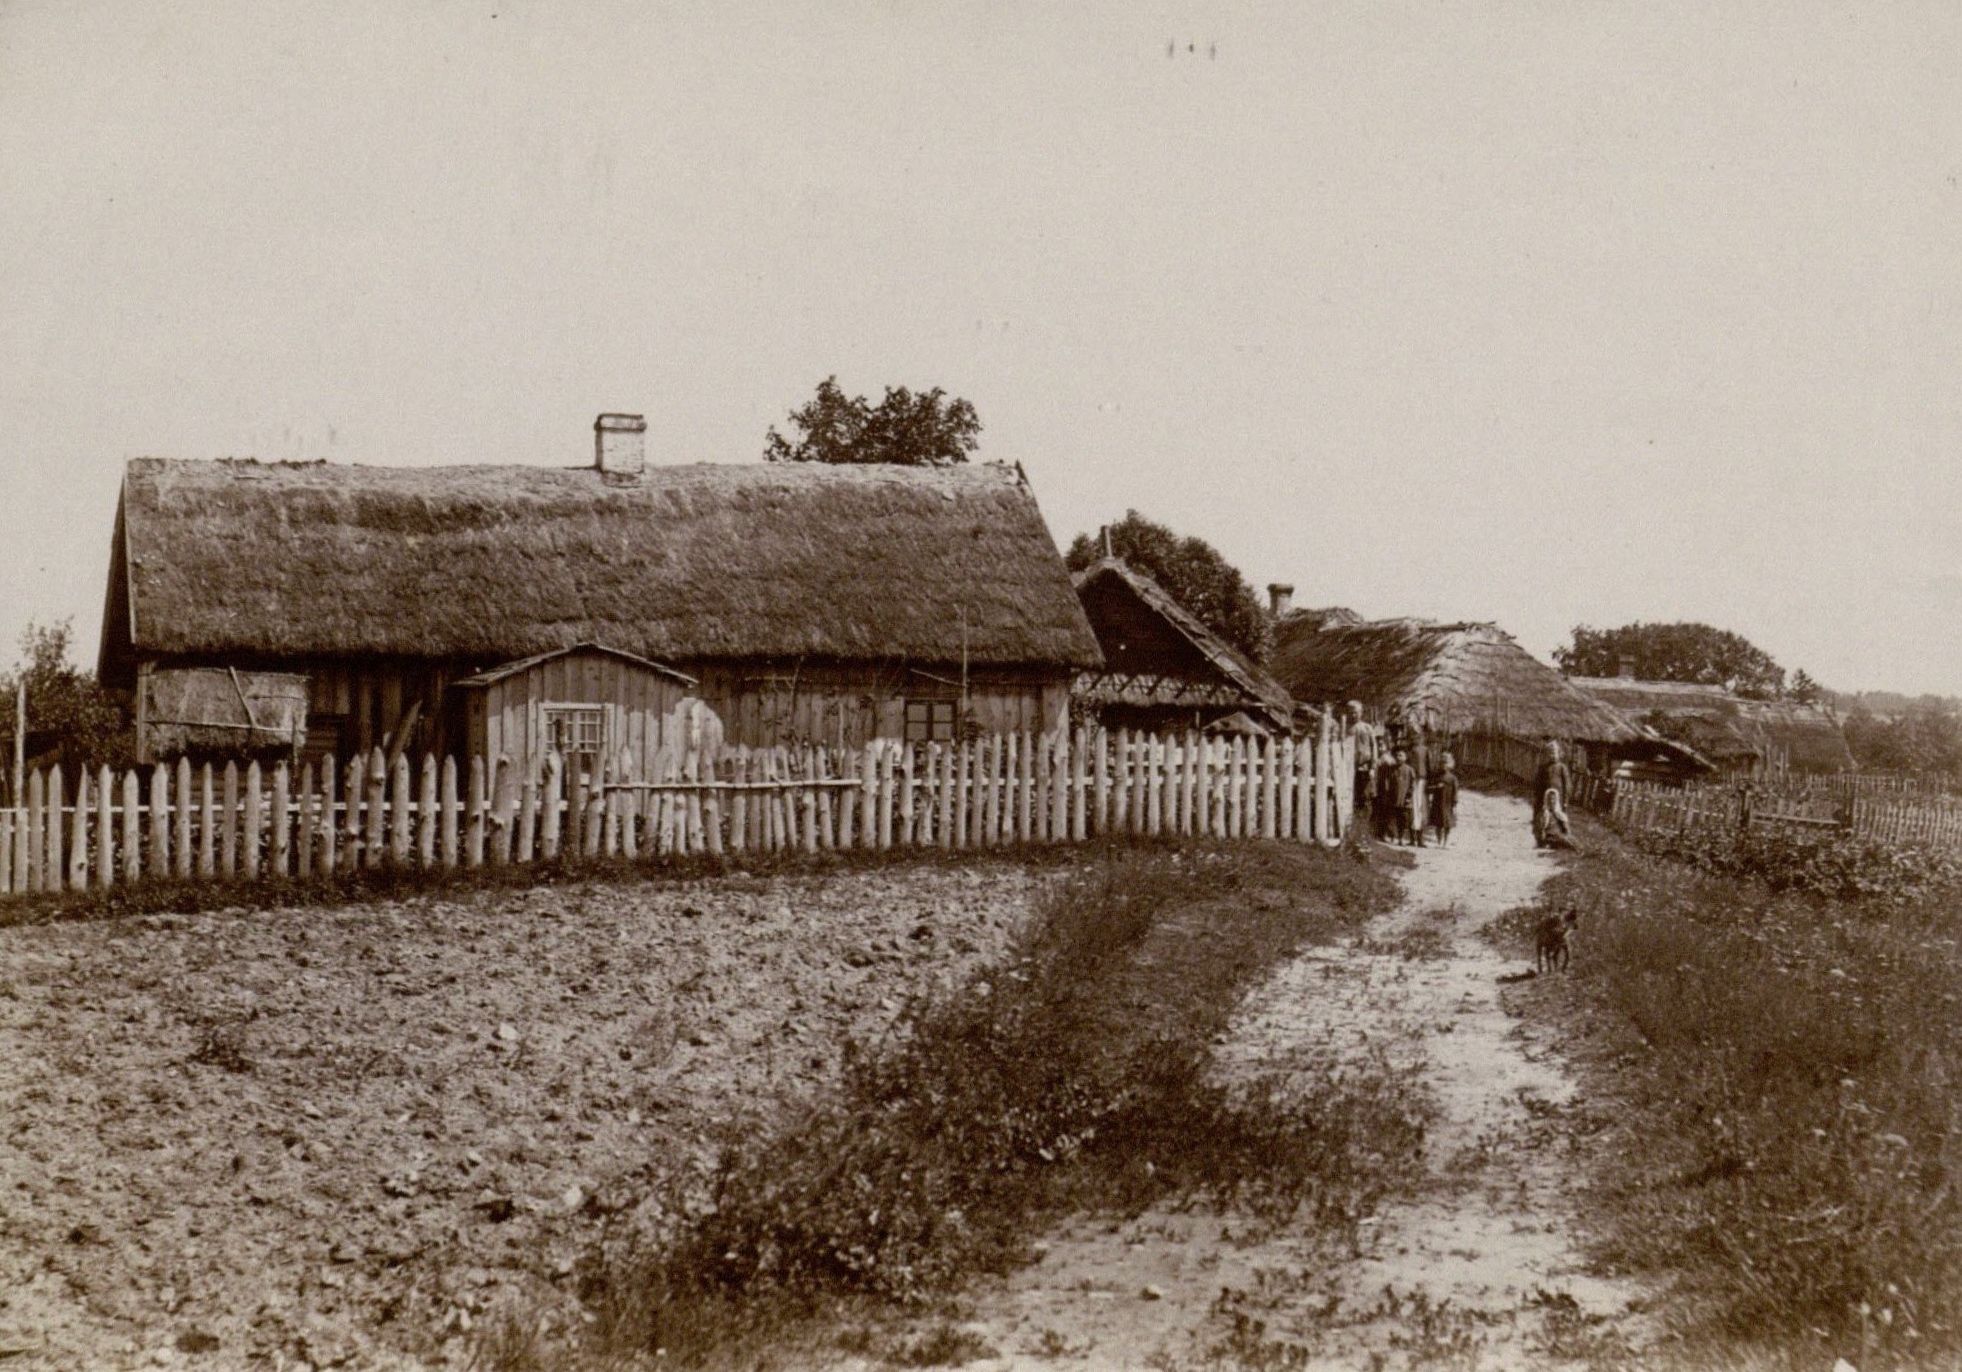 Pakartuvių sodžius prie Šiaulių (dab. Šiauliai). XX a. pradžia